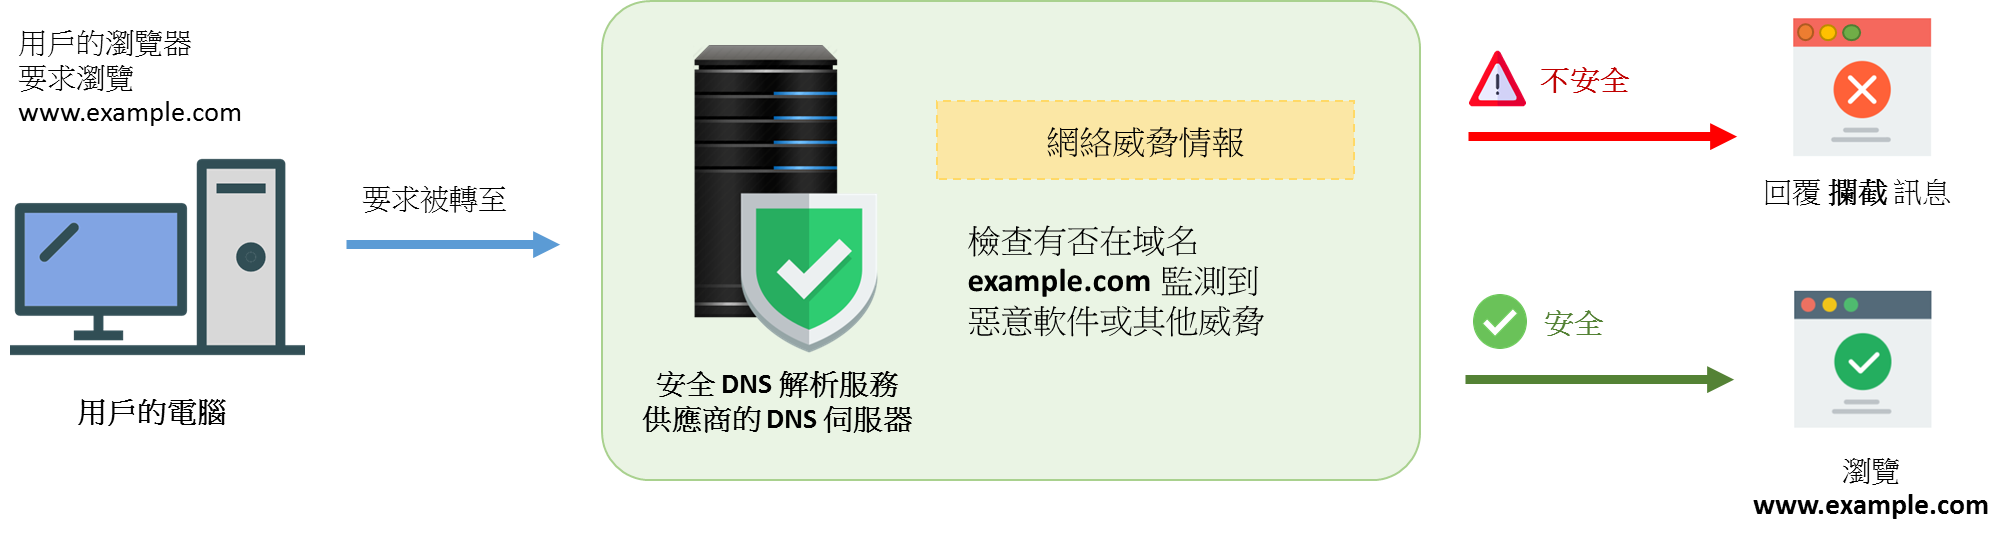 安全的 DNS 解析服務的圖像